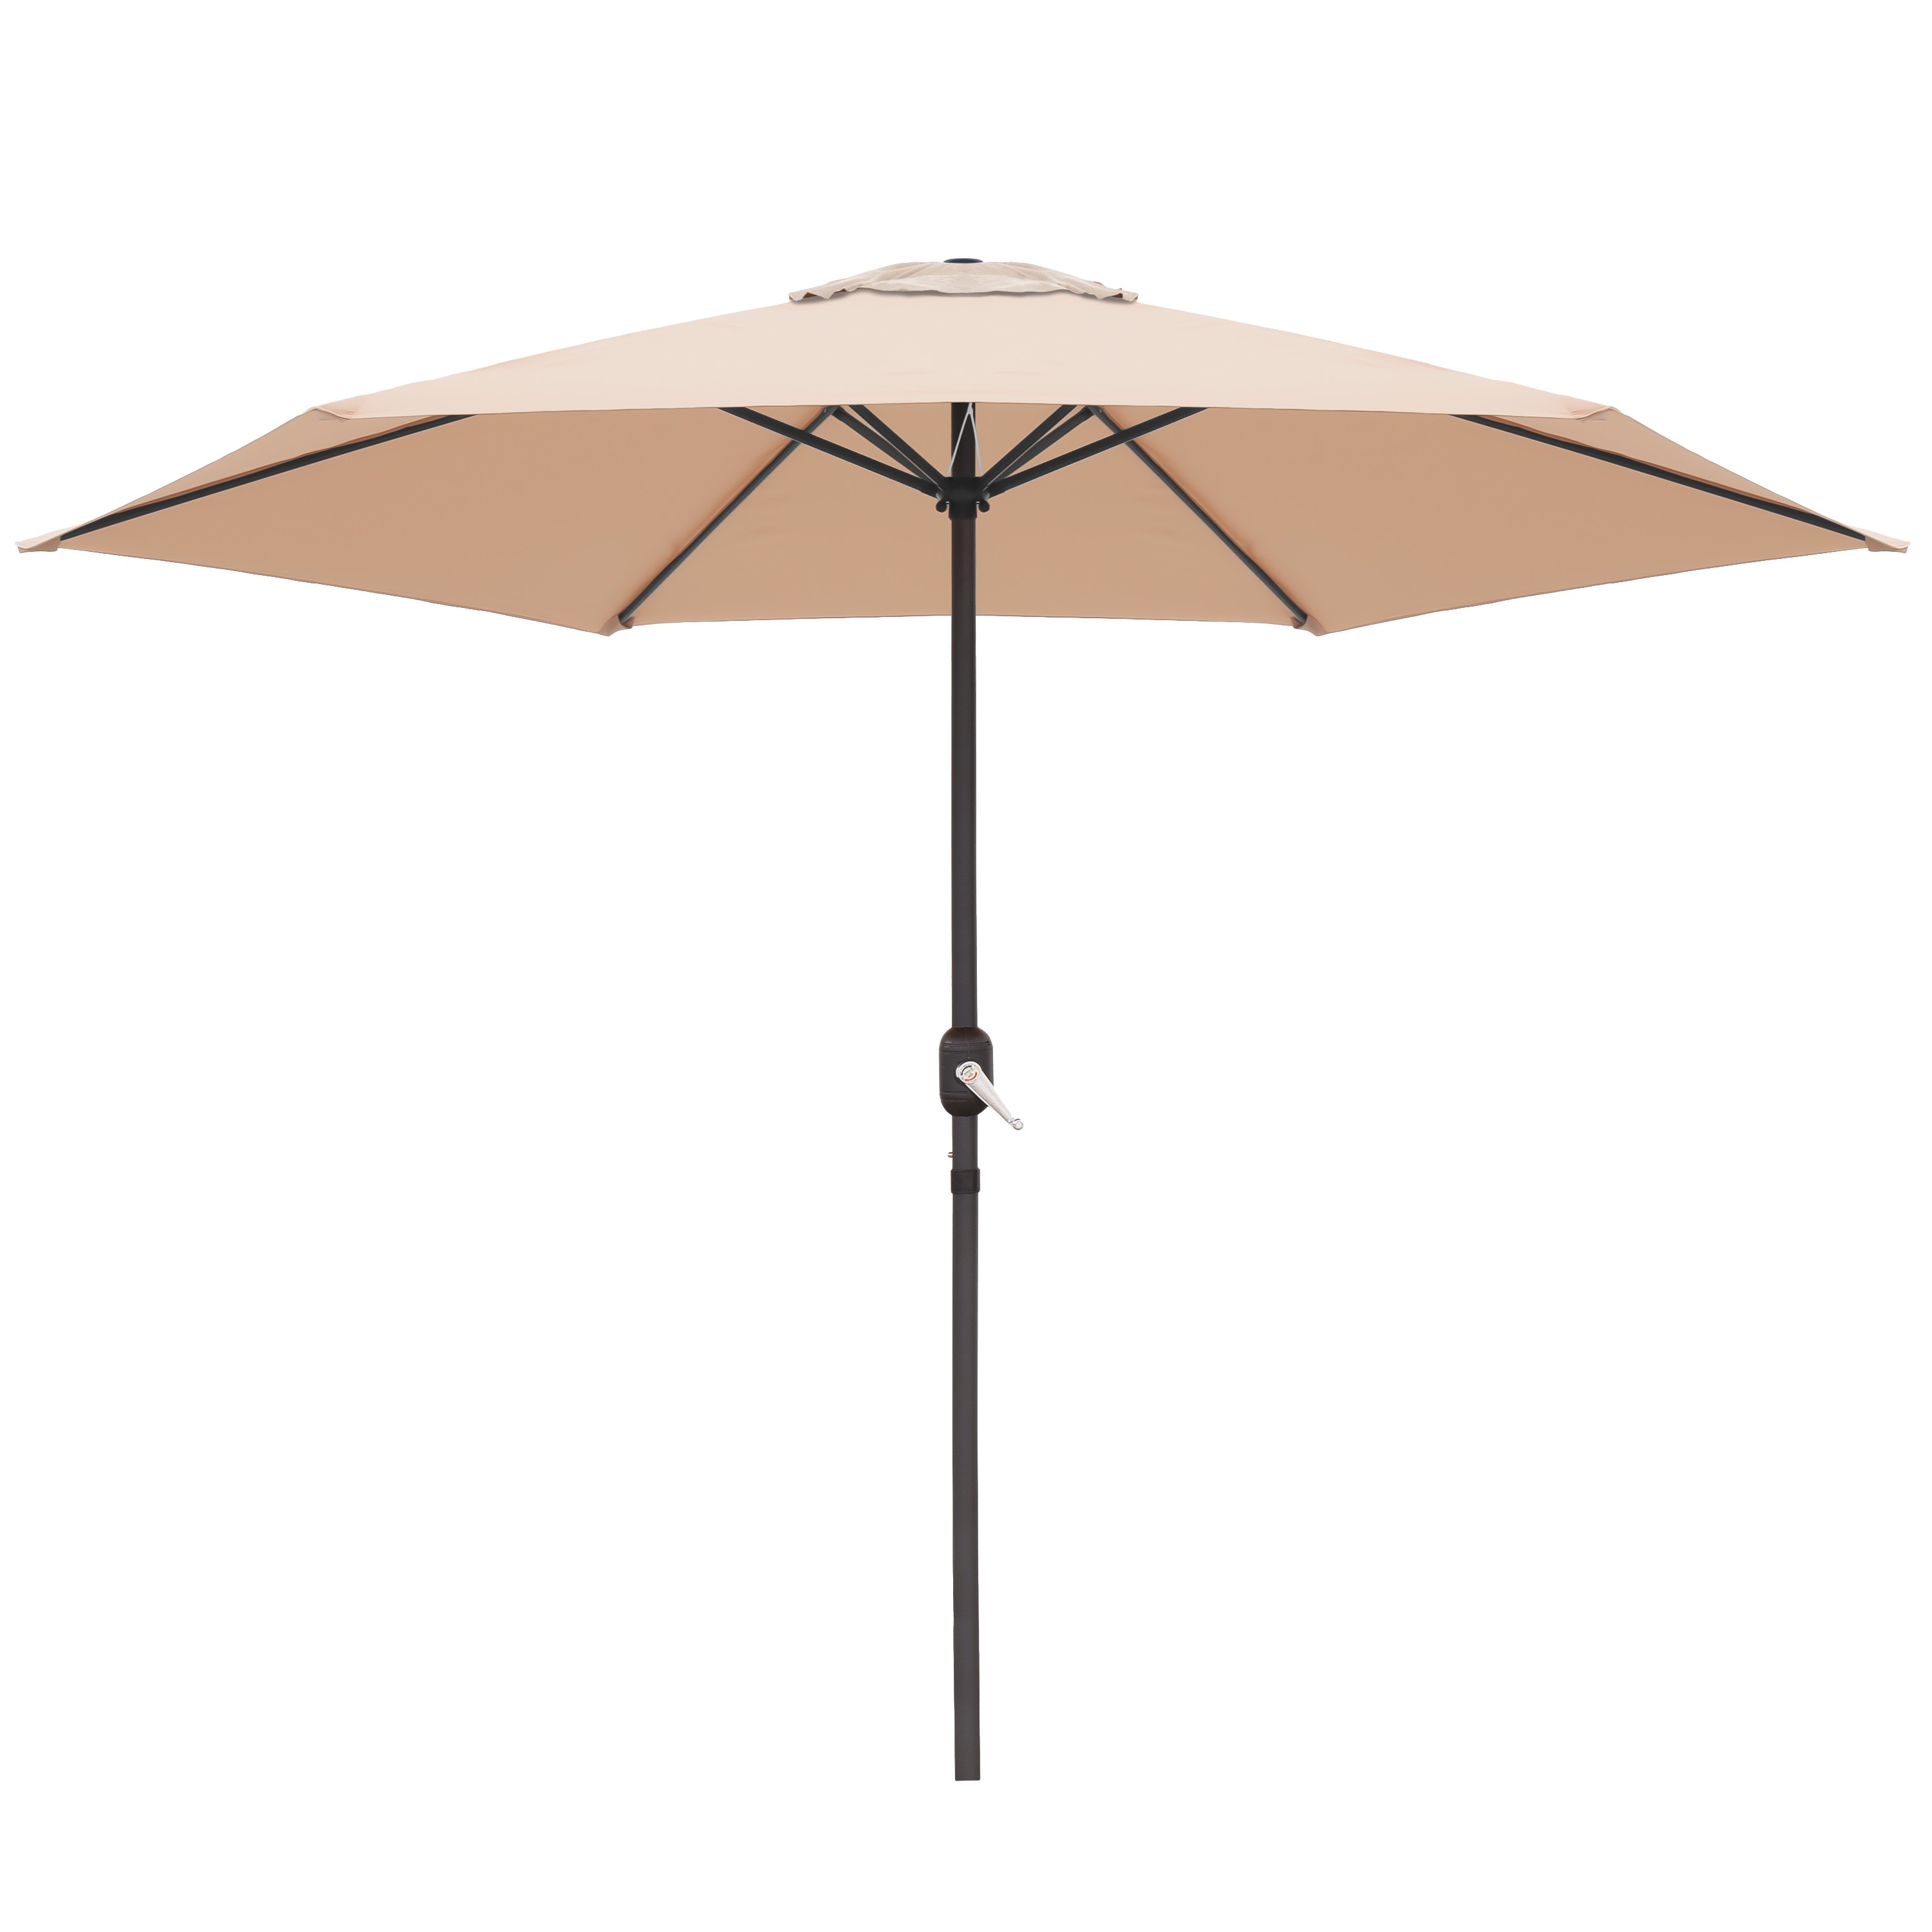 Tumbonas, parasoles y toldos